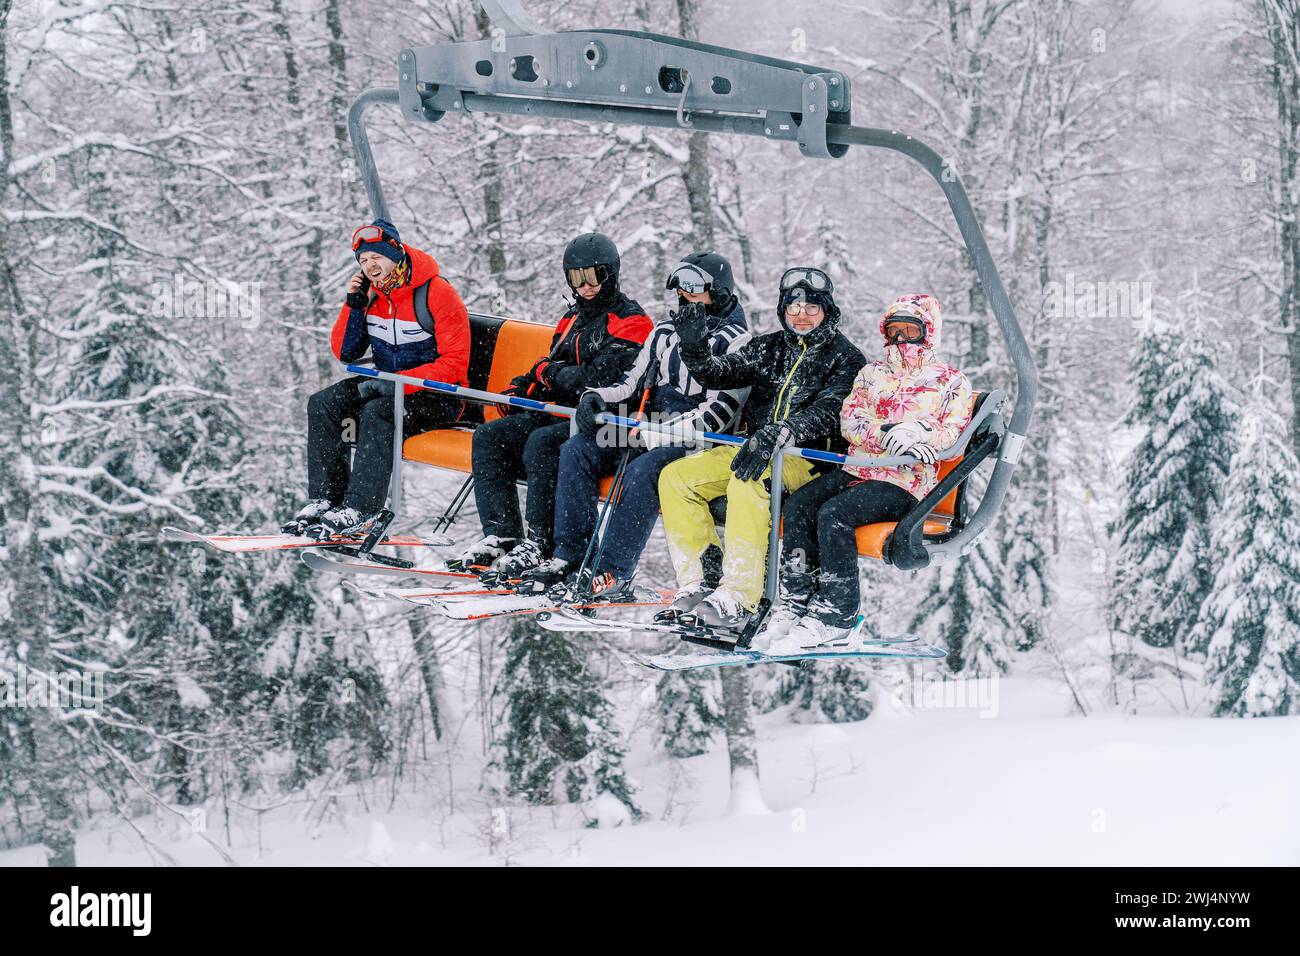 Skifahrer in hellen Skianzügen fahren eine verschneite Piste auf einem Skilift hinauf Stockfoto